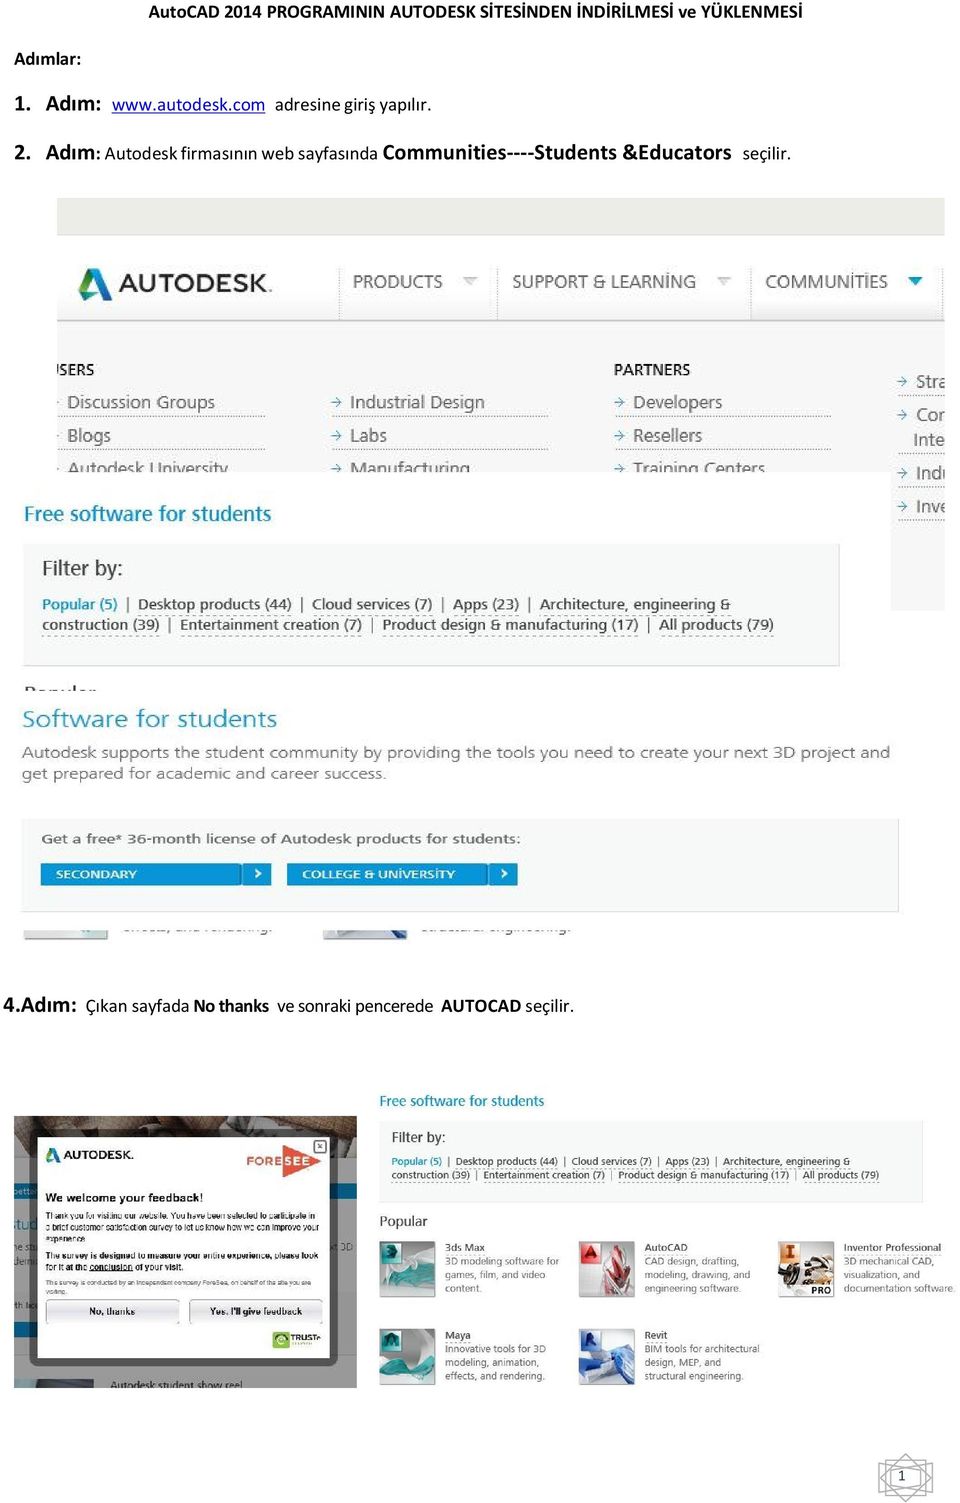 Adım: Autodesk firmasının web sayfasında Communities----Students &Educators seçilir.